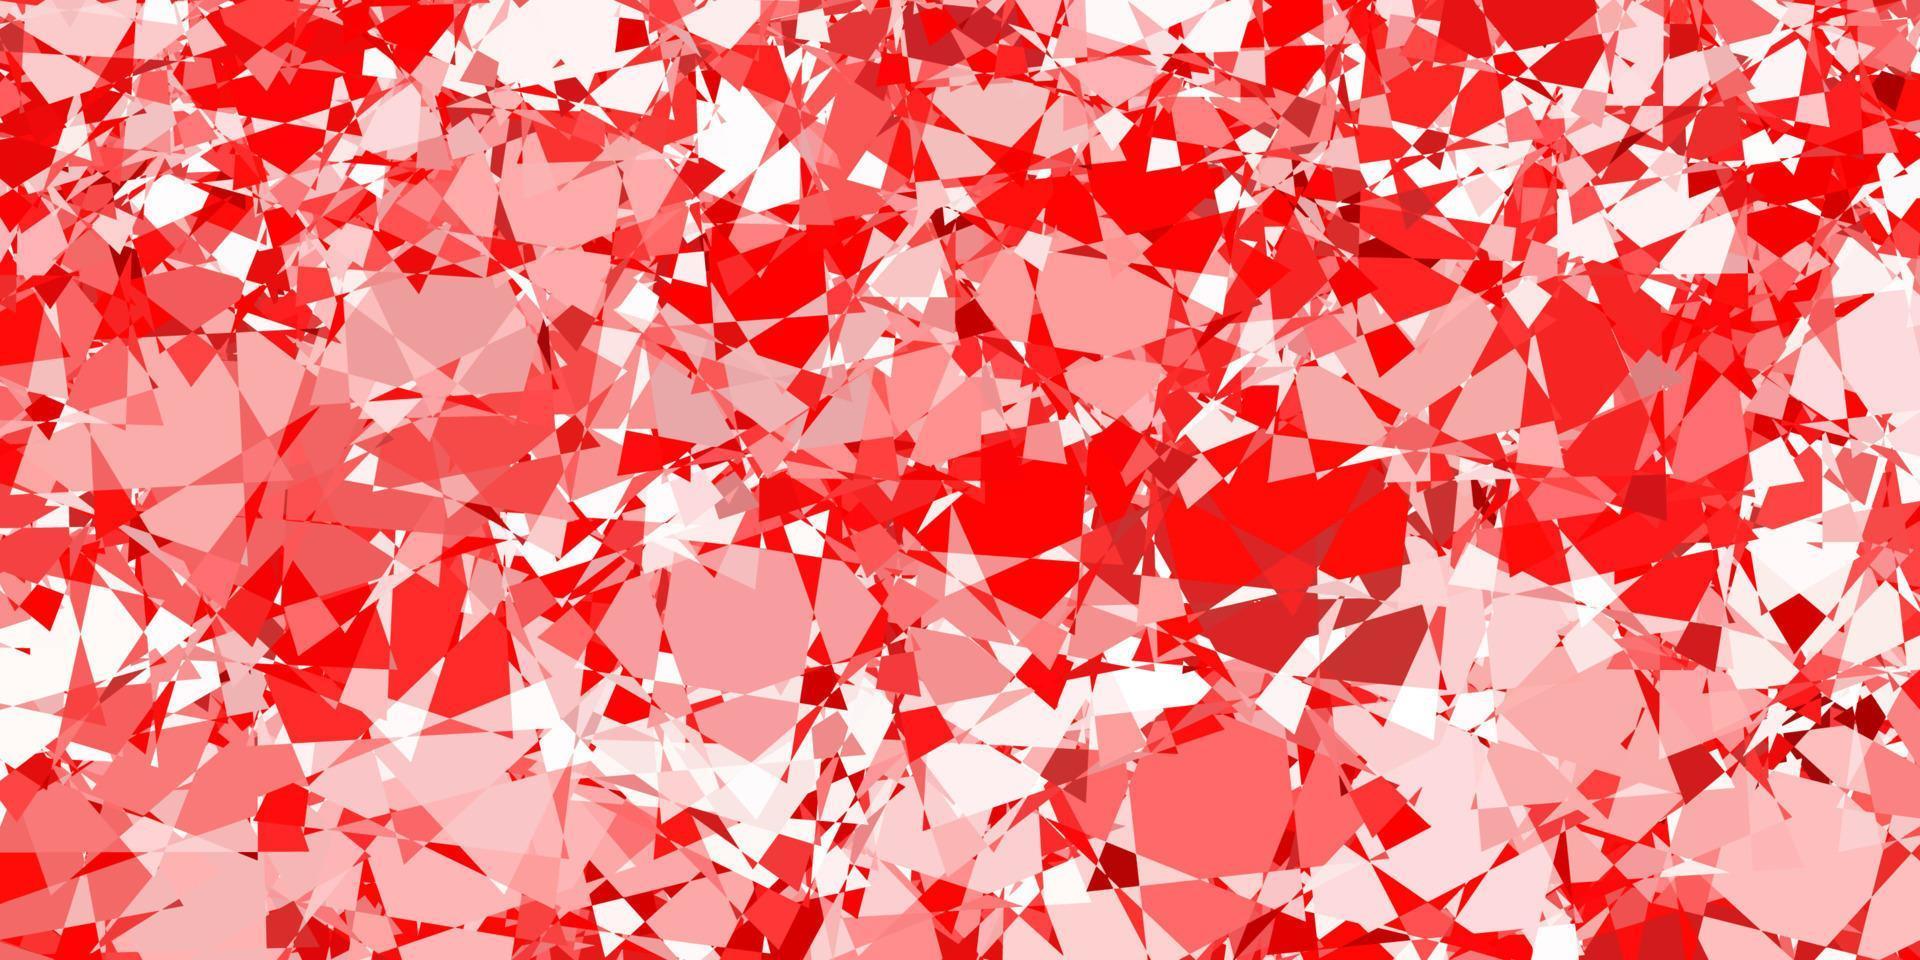 padrão de vetor vermelho claro com formas poligonais.